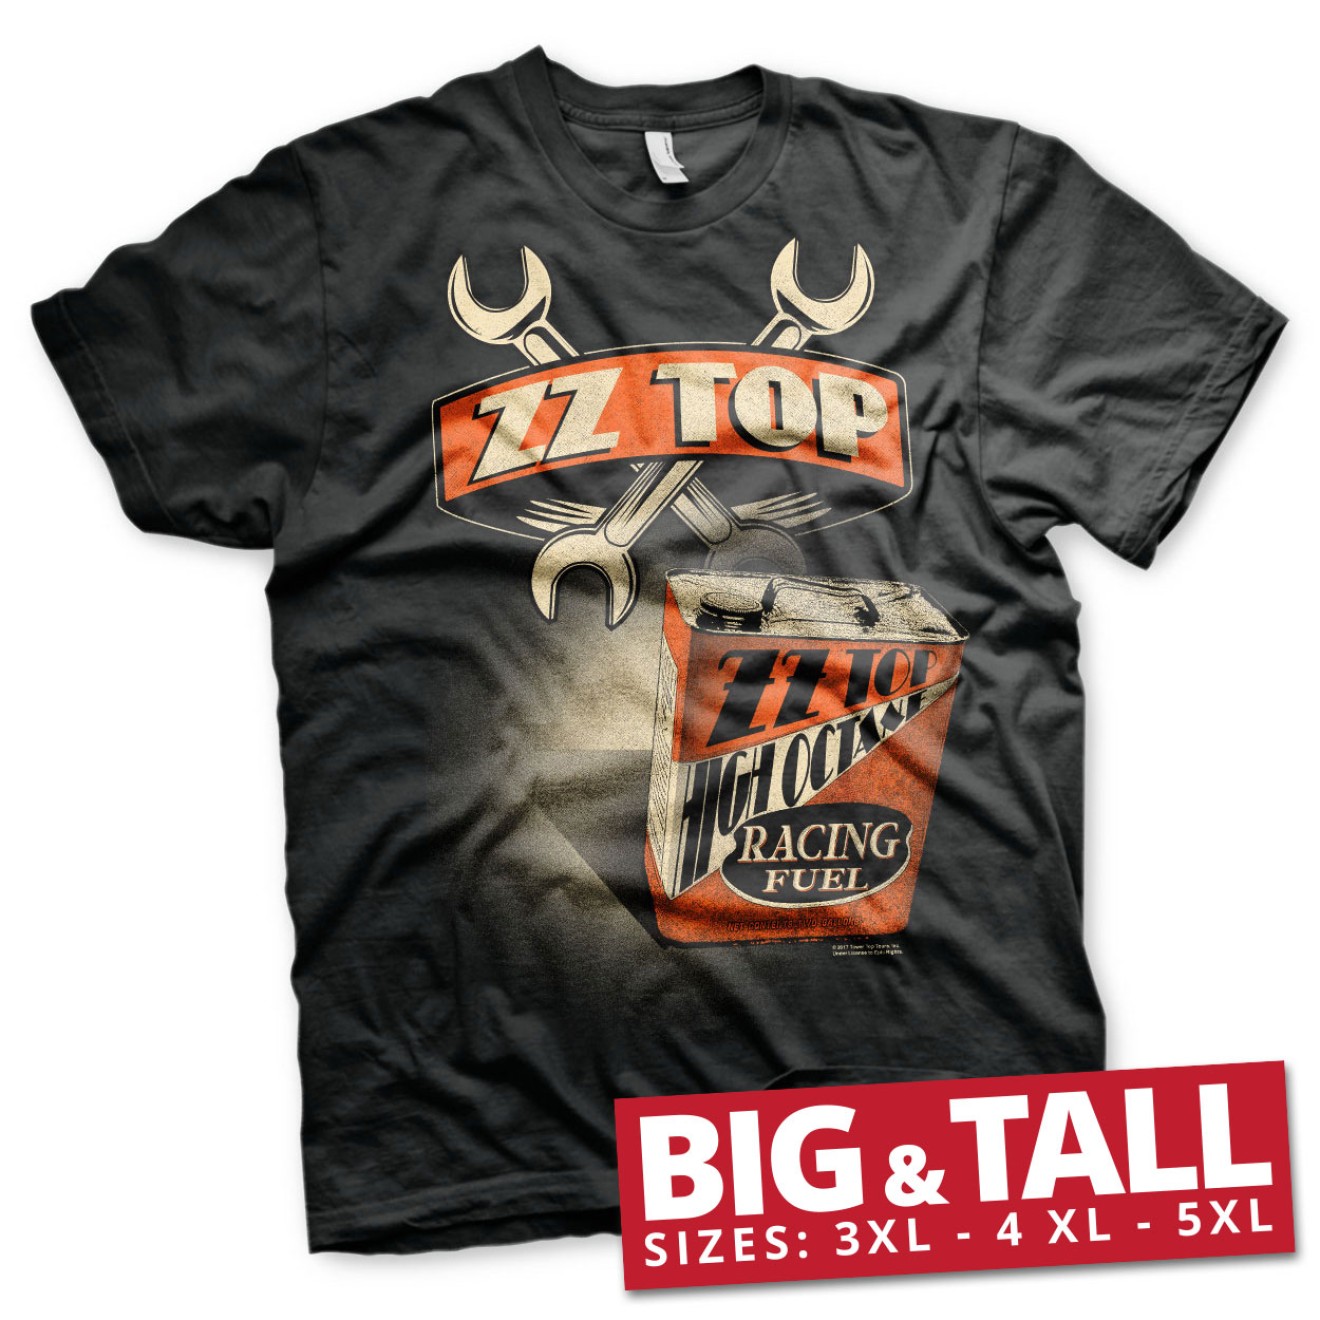 ZZ-Top High Octane Racing Fuel Big & Tall T-Shirt Große Größen